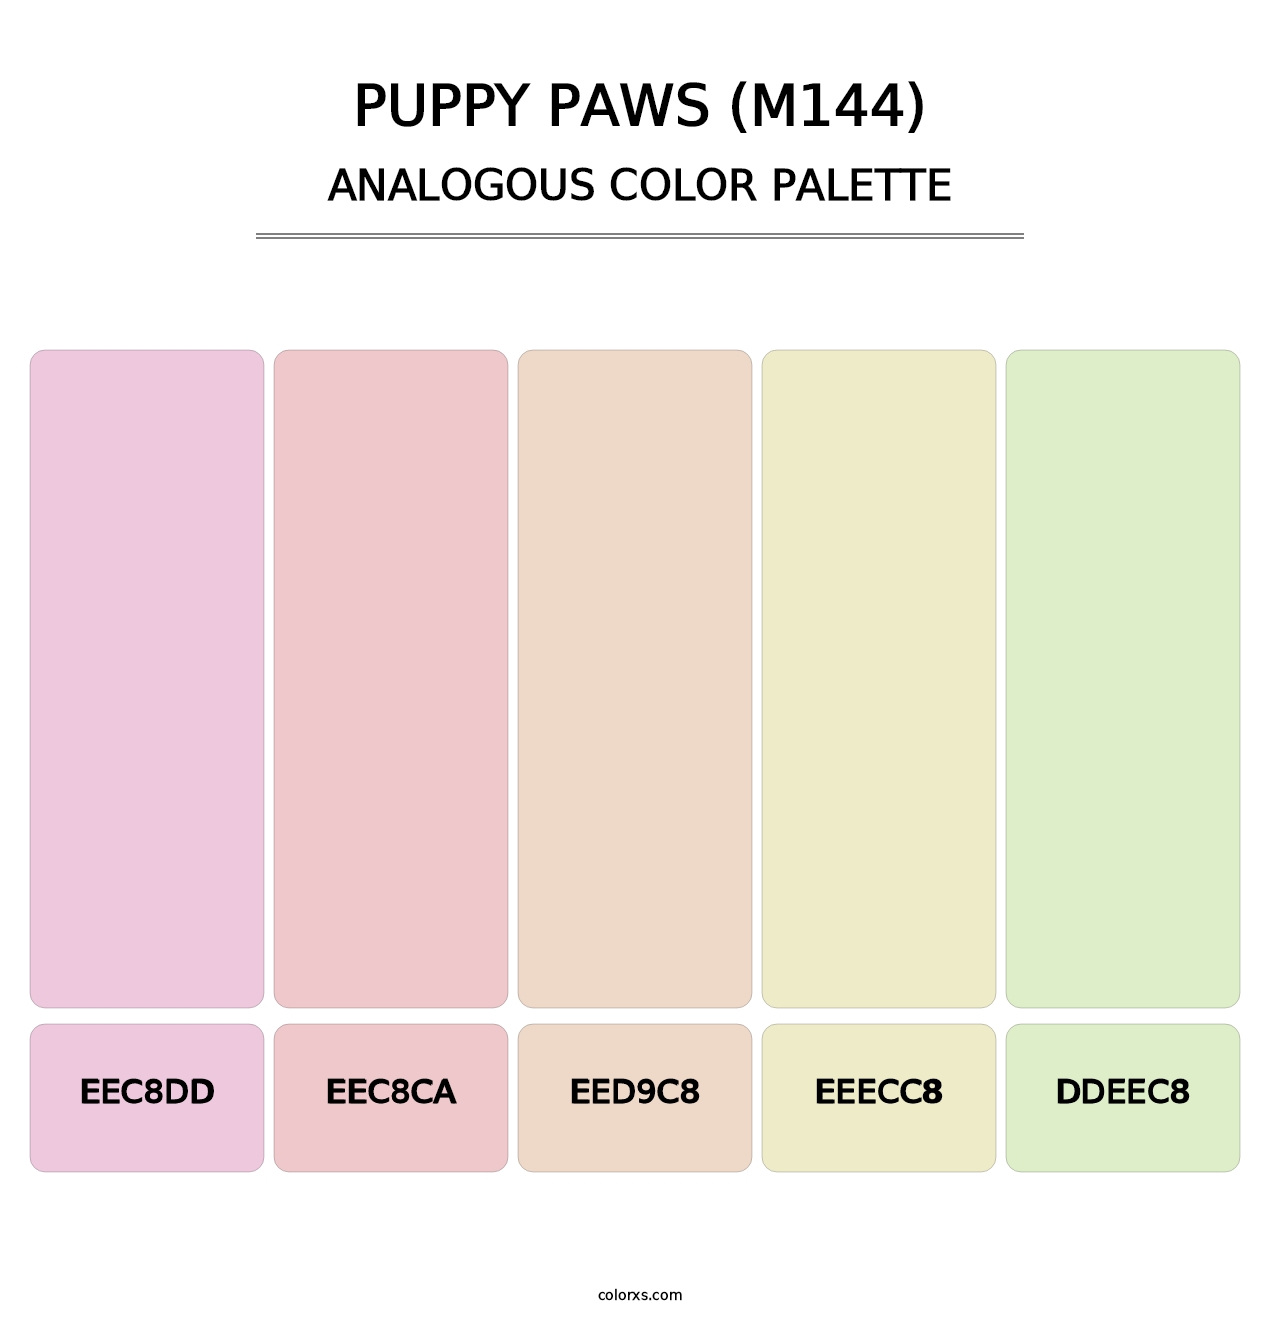 Puppy Paws (M144) - Analogous Color Palette